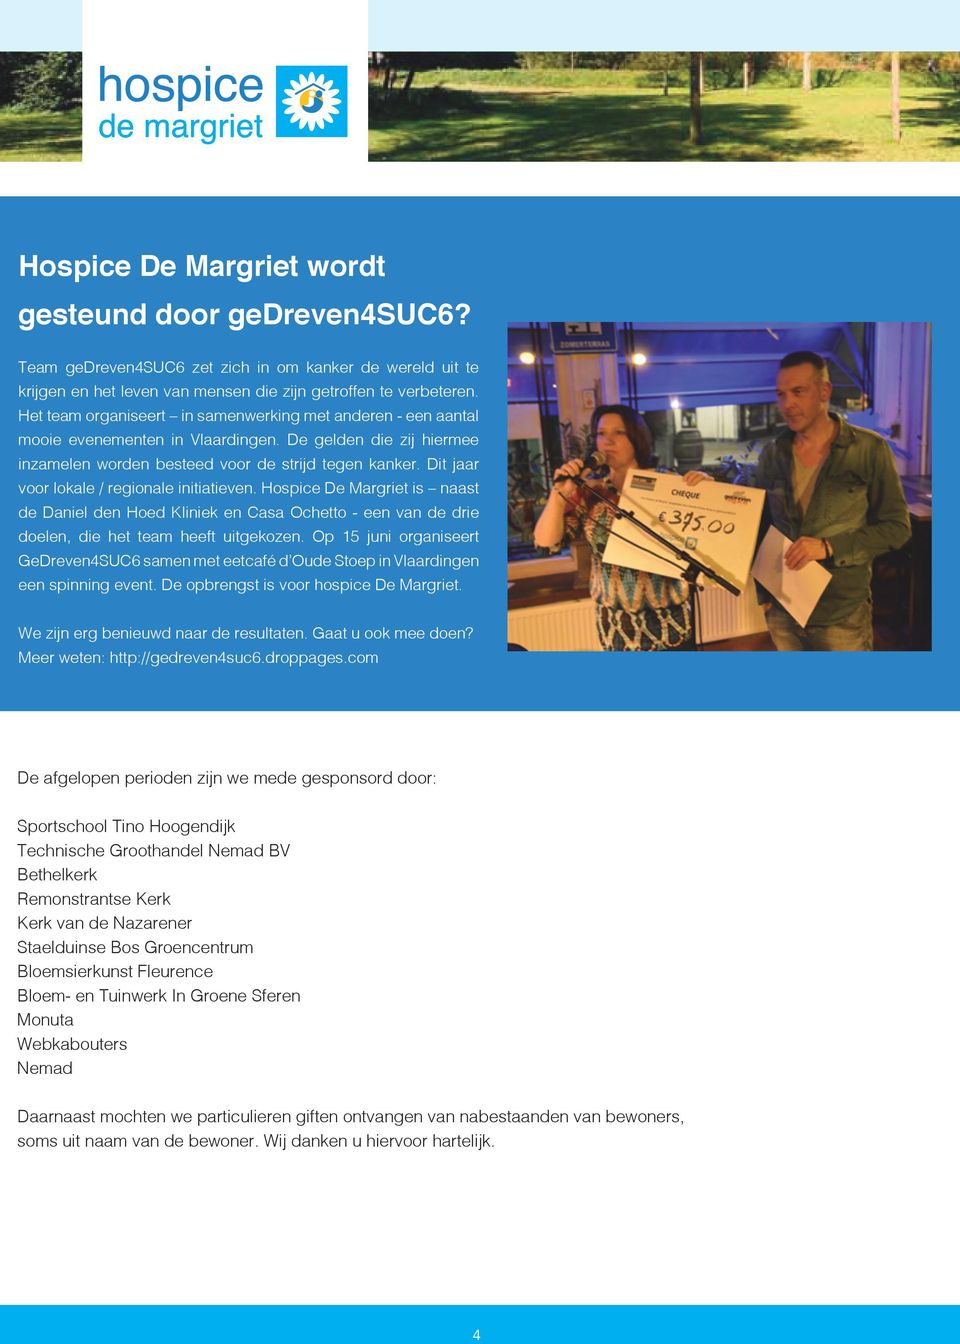 Dit jaar voor lokale / regionale initiatieven. Hospice De Margriet is naast de Daniel den Hoed Kliniek en Casa Ochetto - een van de drie doelen, die het team heeft uitgekozen.